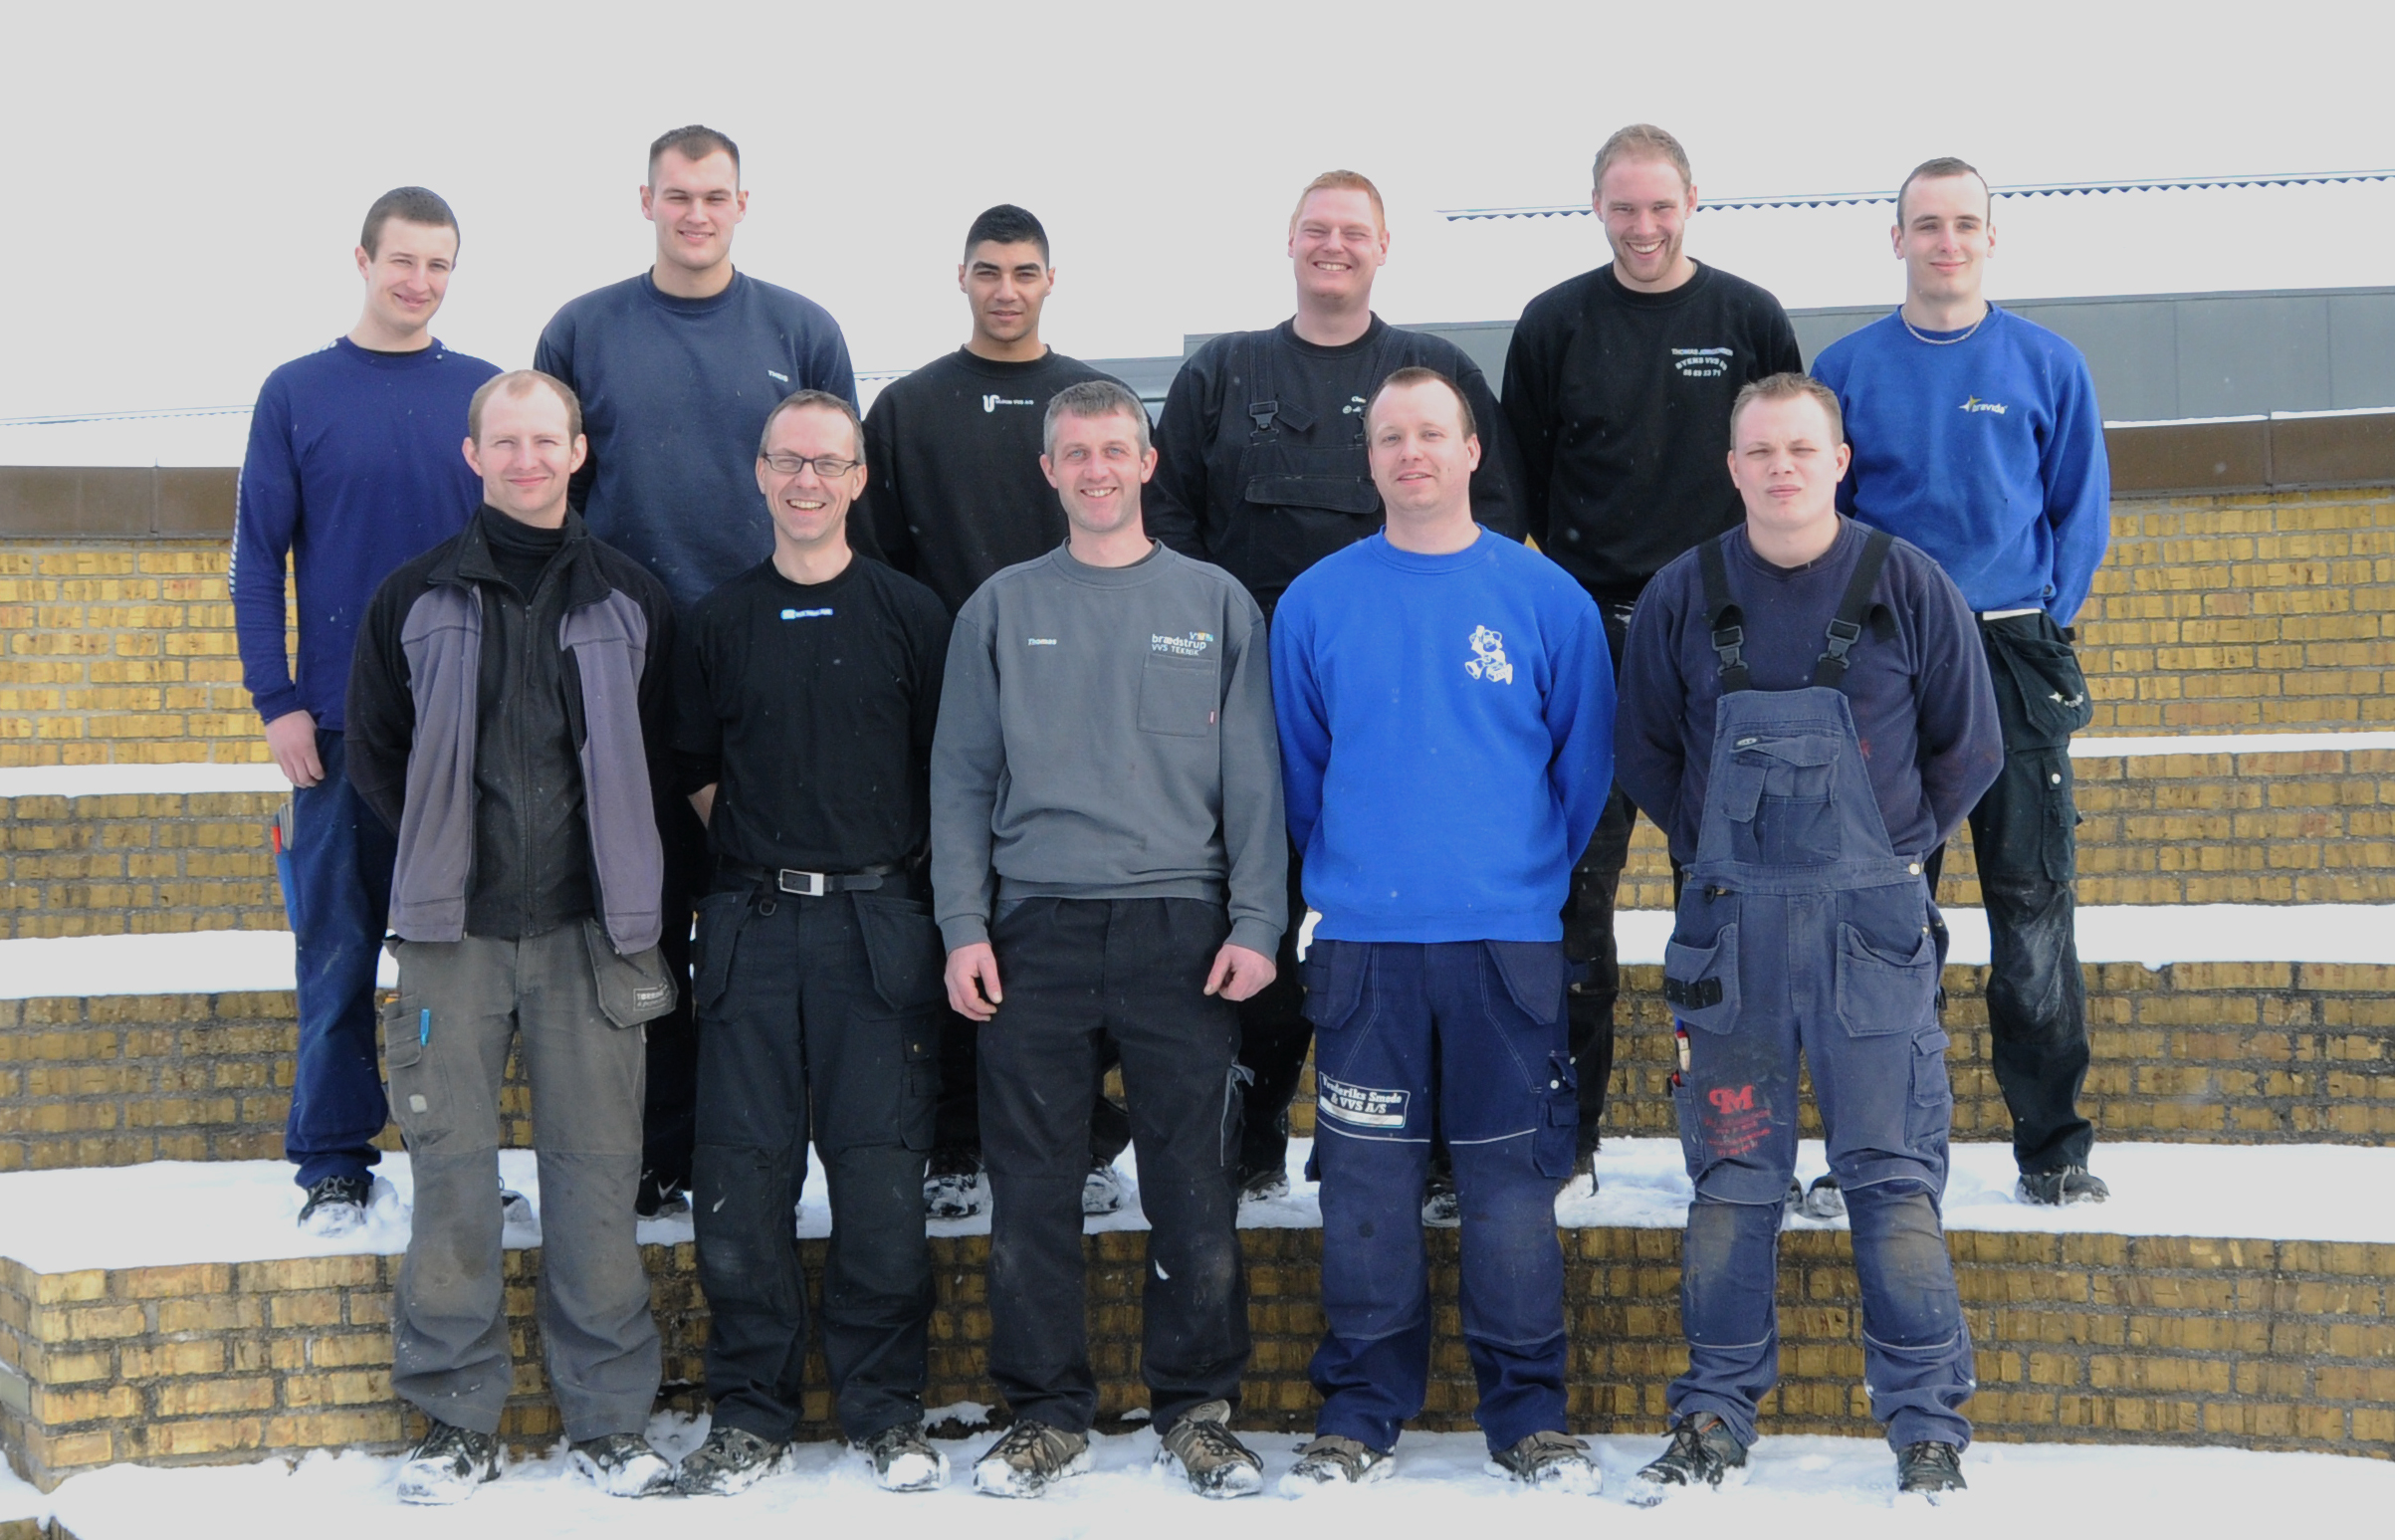 Vvs-energispecialister fra Herningsholm Erhvervsskole 21.marts 2013